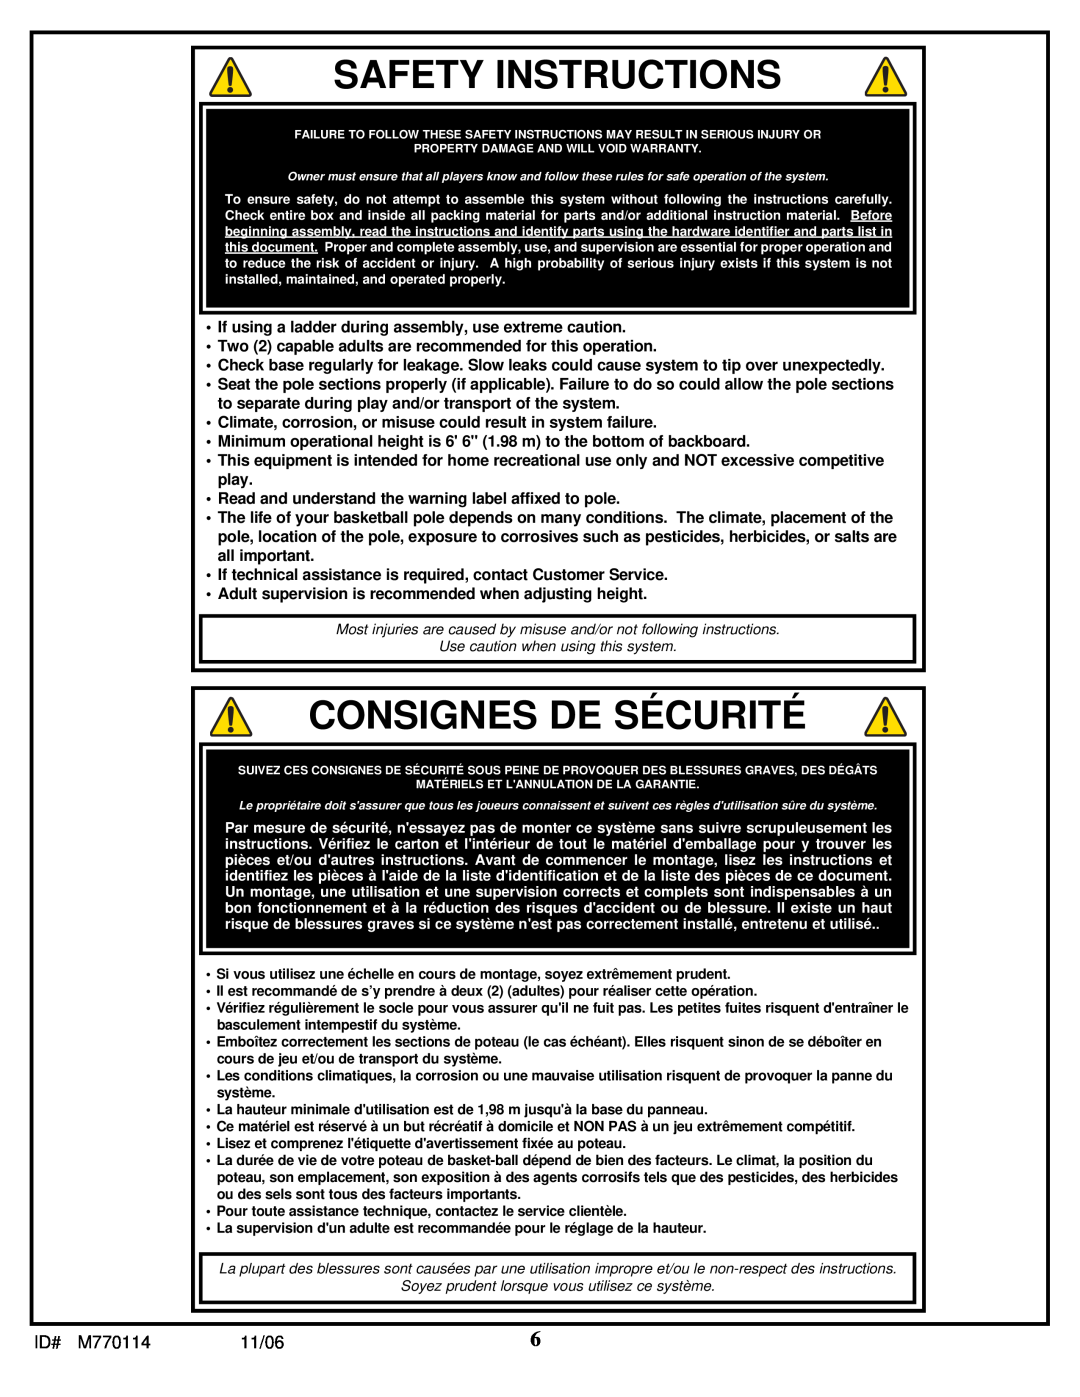 Huffy WM2688H manual Safety Instructions, Consignes De Sécurité 